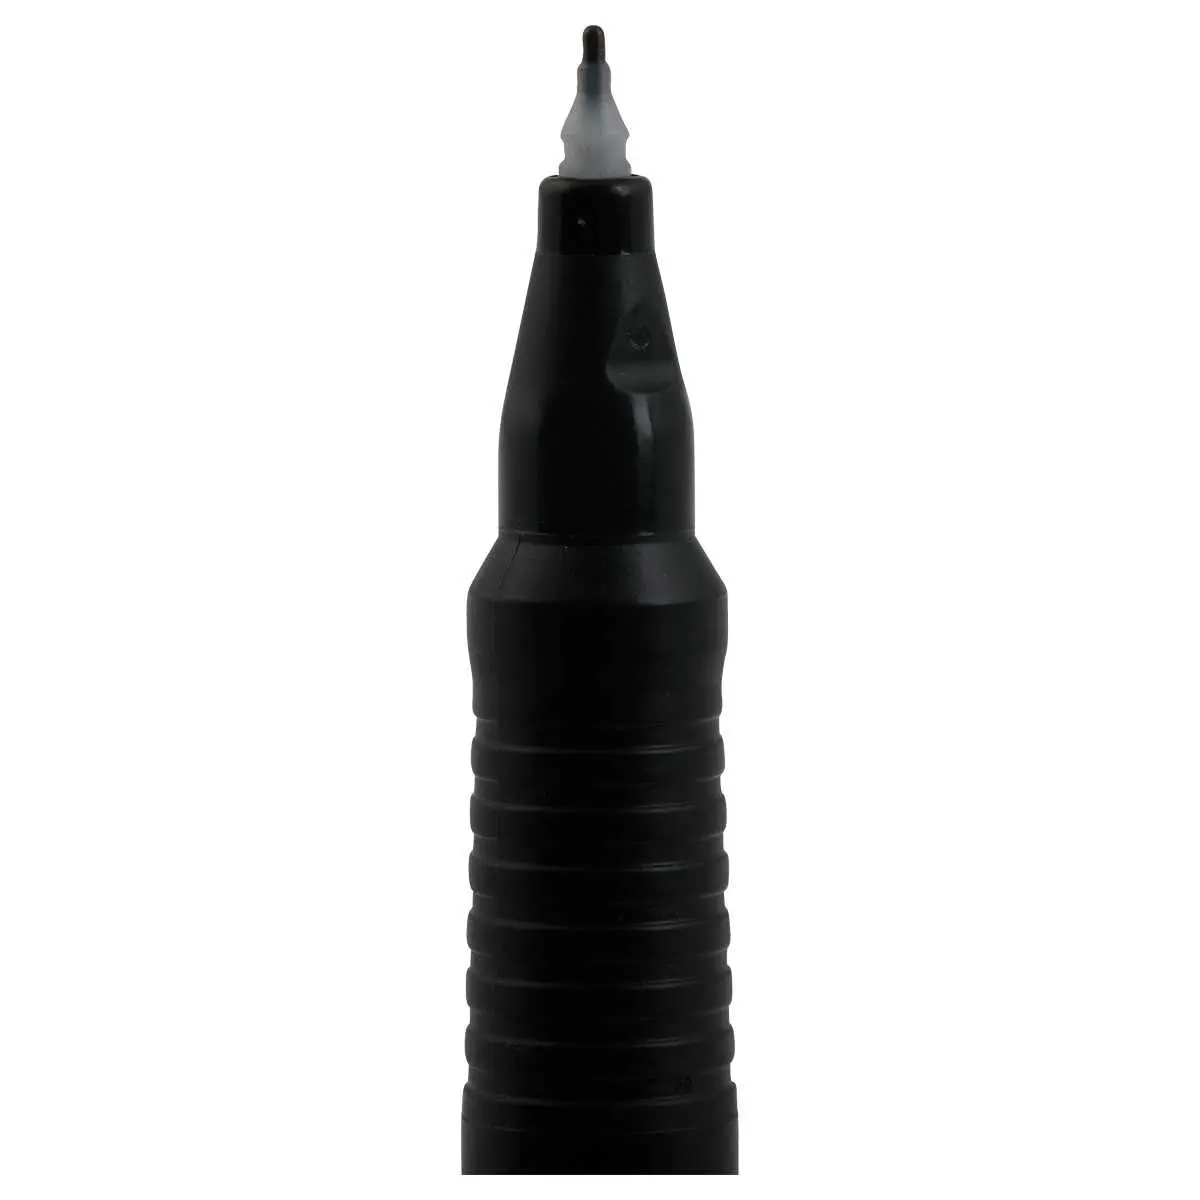 Feutre permanent pointe fine 0,7 mm Stabilo - noir